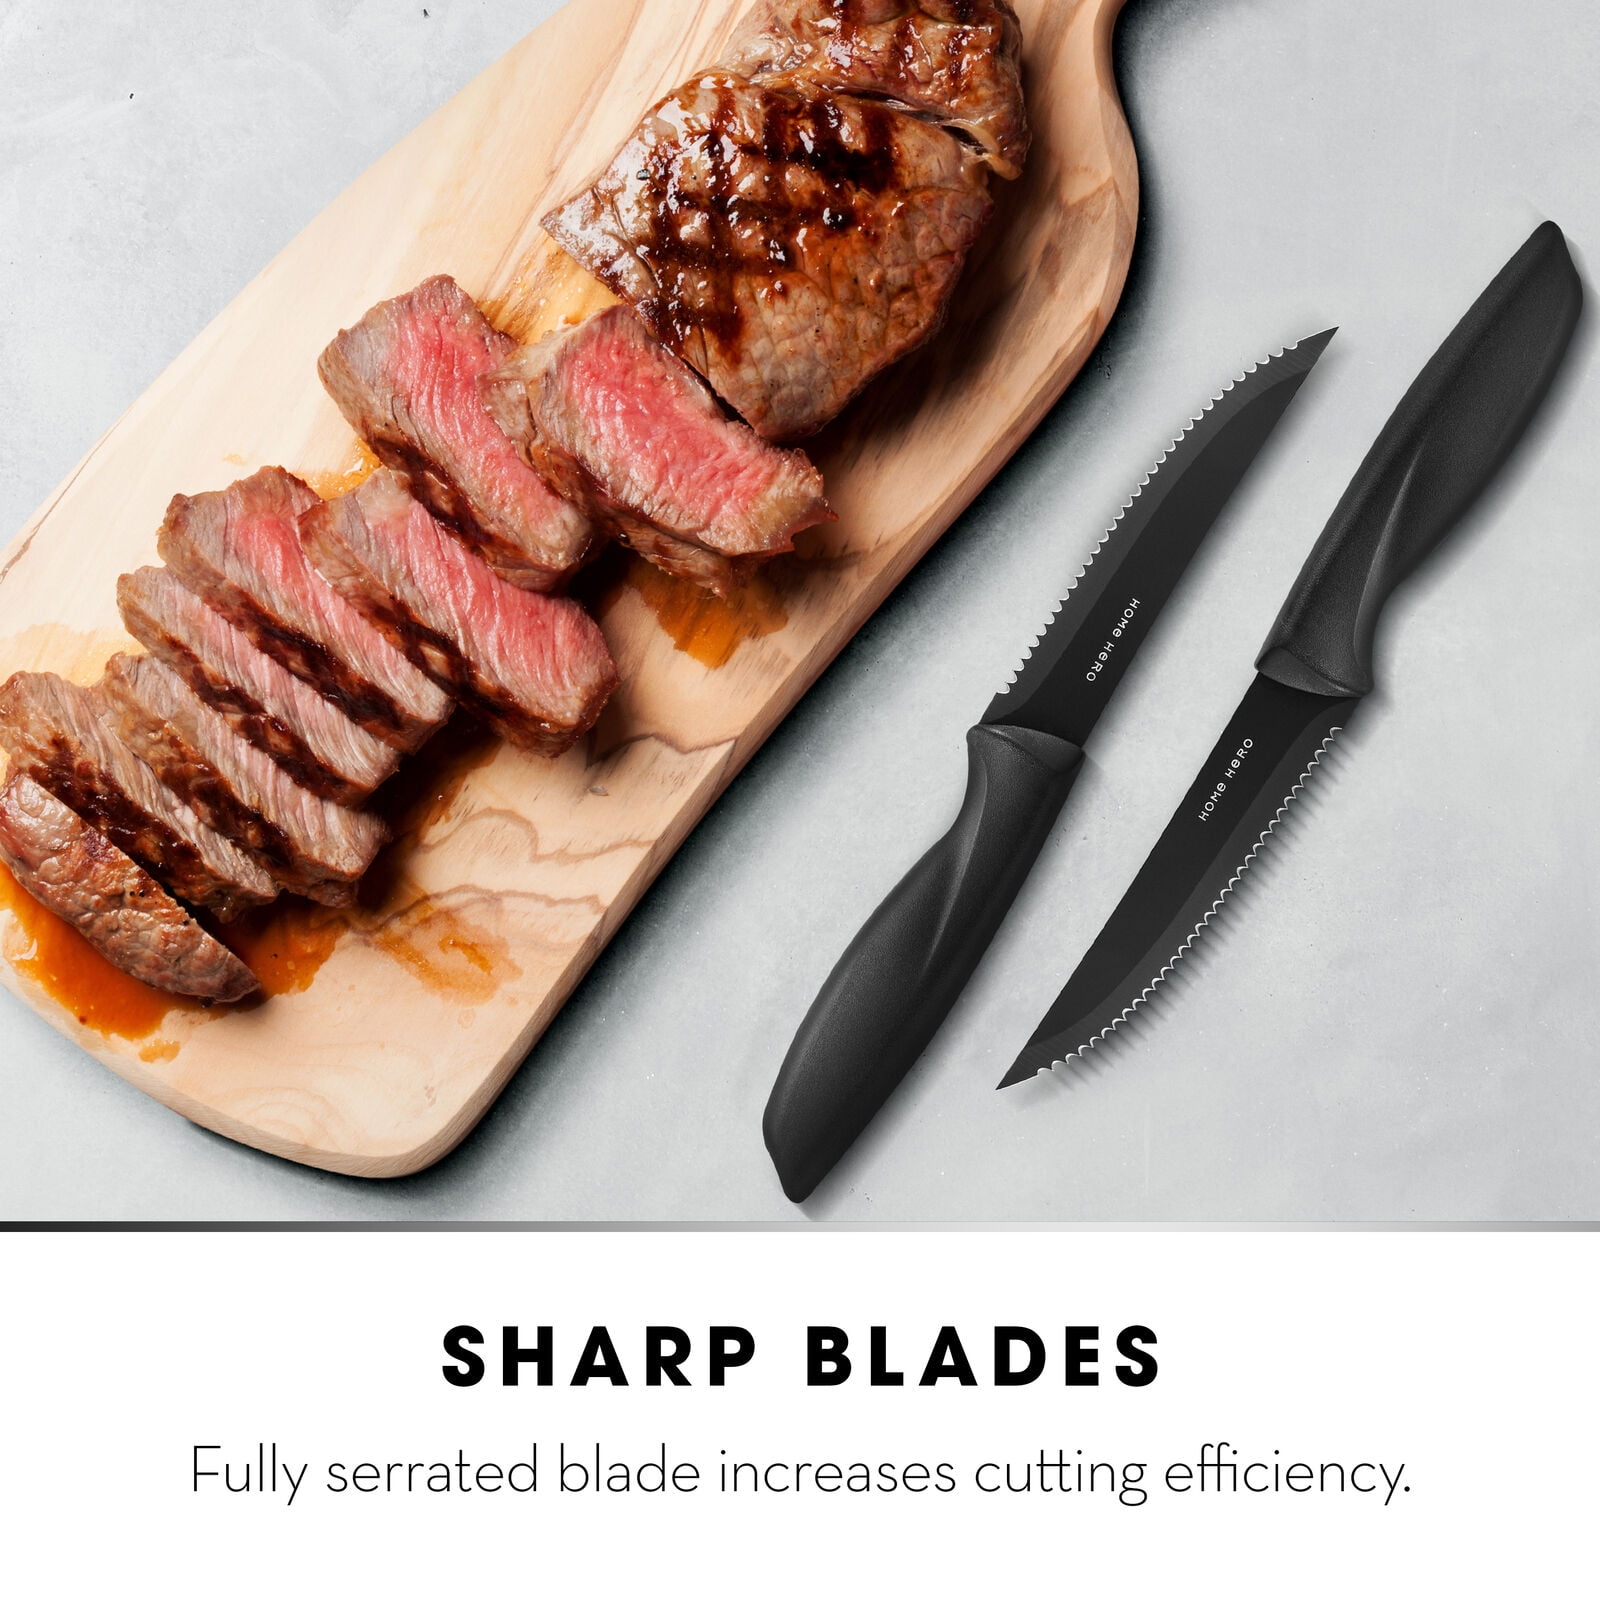 Hecef Black Oxide Steak Knife Set of 8, Dishwasher Safe High Carbon Stainless Steel Serrated Knives, Size: 10.24 x 8.66 x 1.1